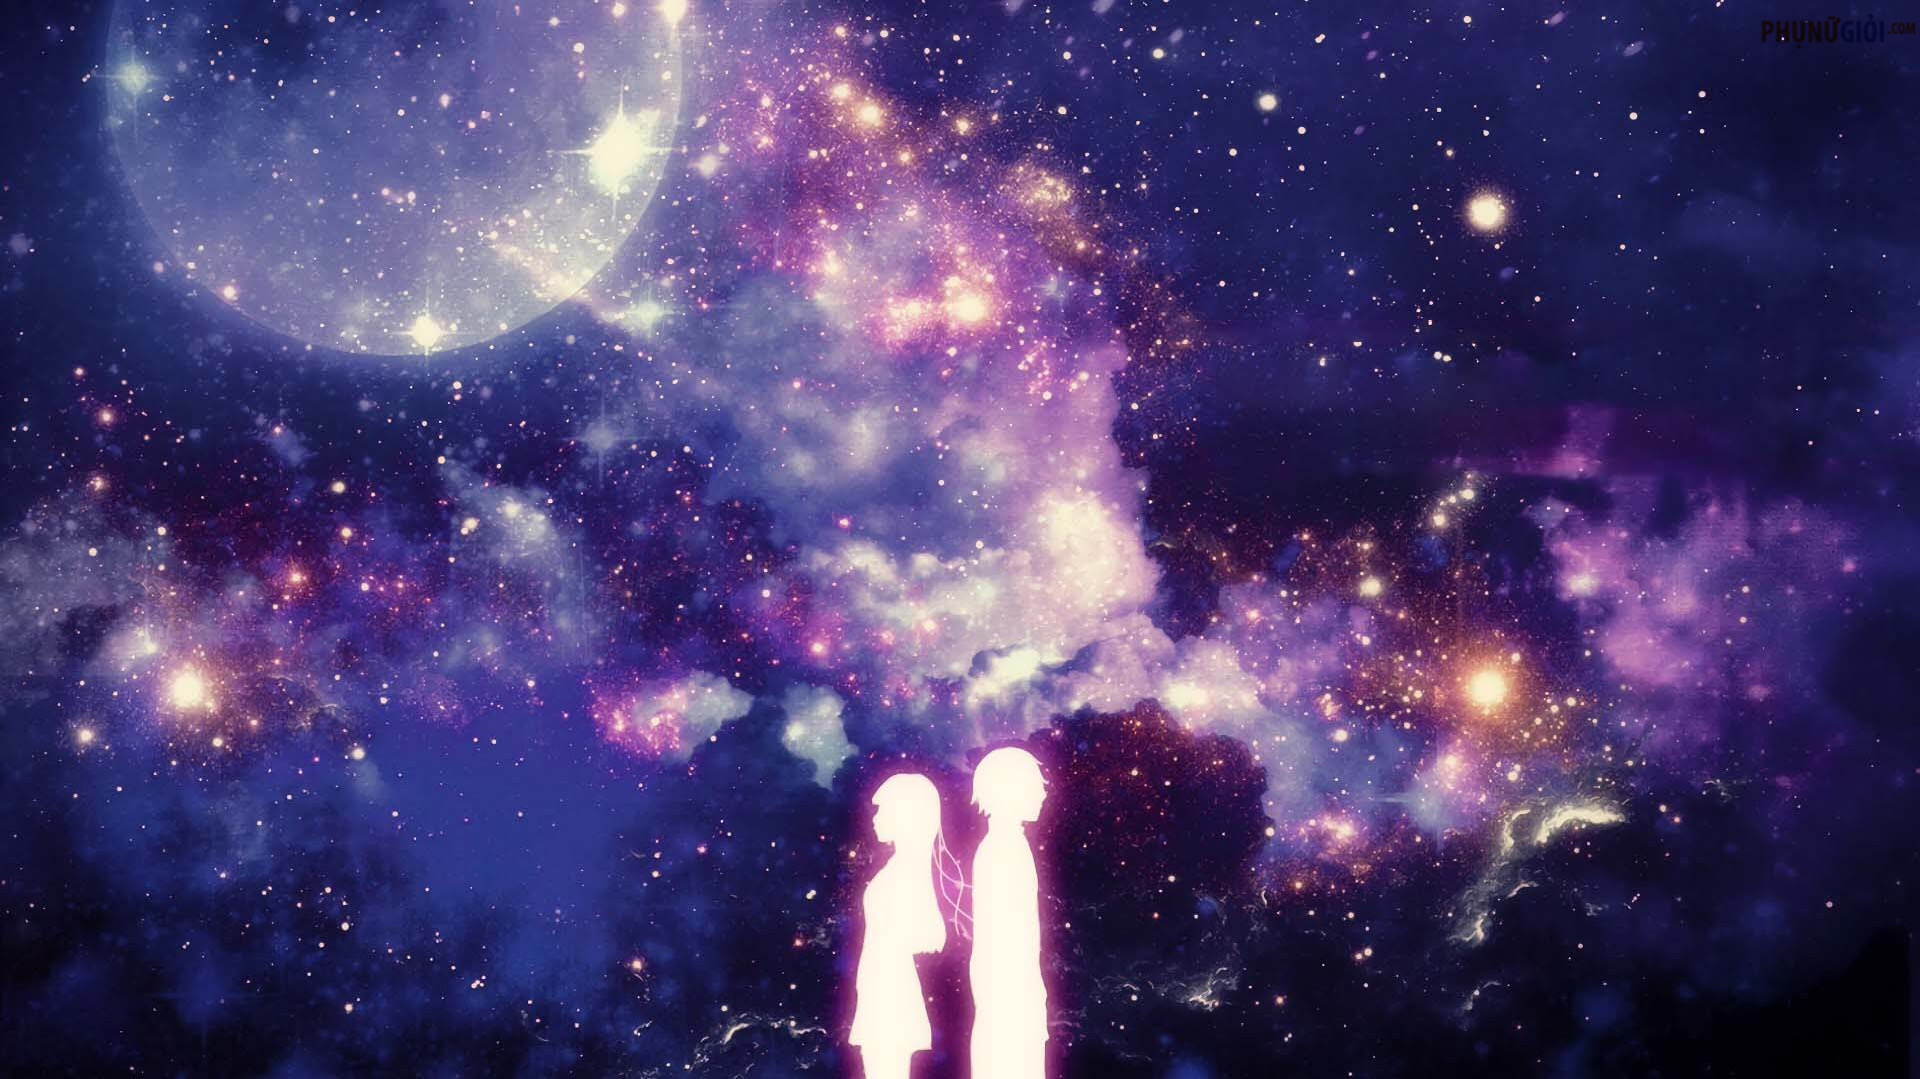 Với 999+ hình ảnh Galaxy Anime đẹp tuyệt, bạn sẽ được khám phá một thế giới đầy bất ngờ và kỳ diệu. Cùng tận hưởng tất cả các loại hình ảnh anime galaxy đáng yêu và độc đáo, bạn sẽ không thể tìm thấy bất kỳ nơi nào khác. Hãy thưởng thức và tìm ra bức tranh ưa thích của bạn ngay bây giờ!